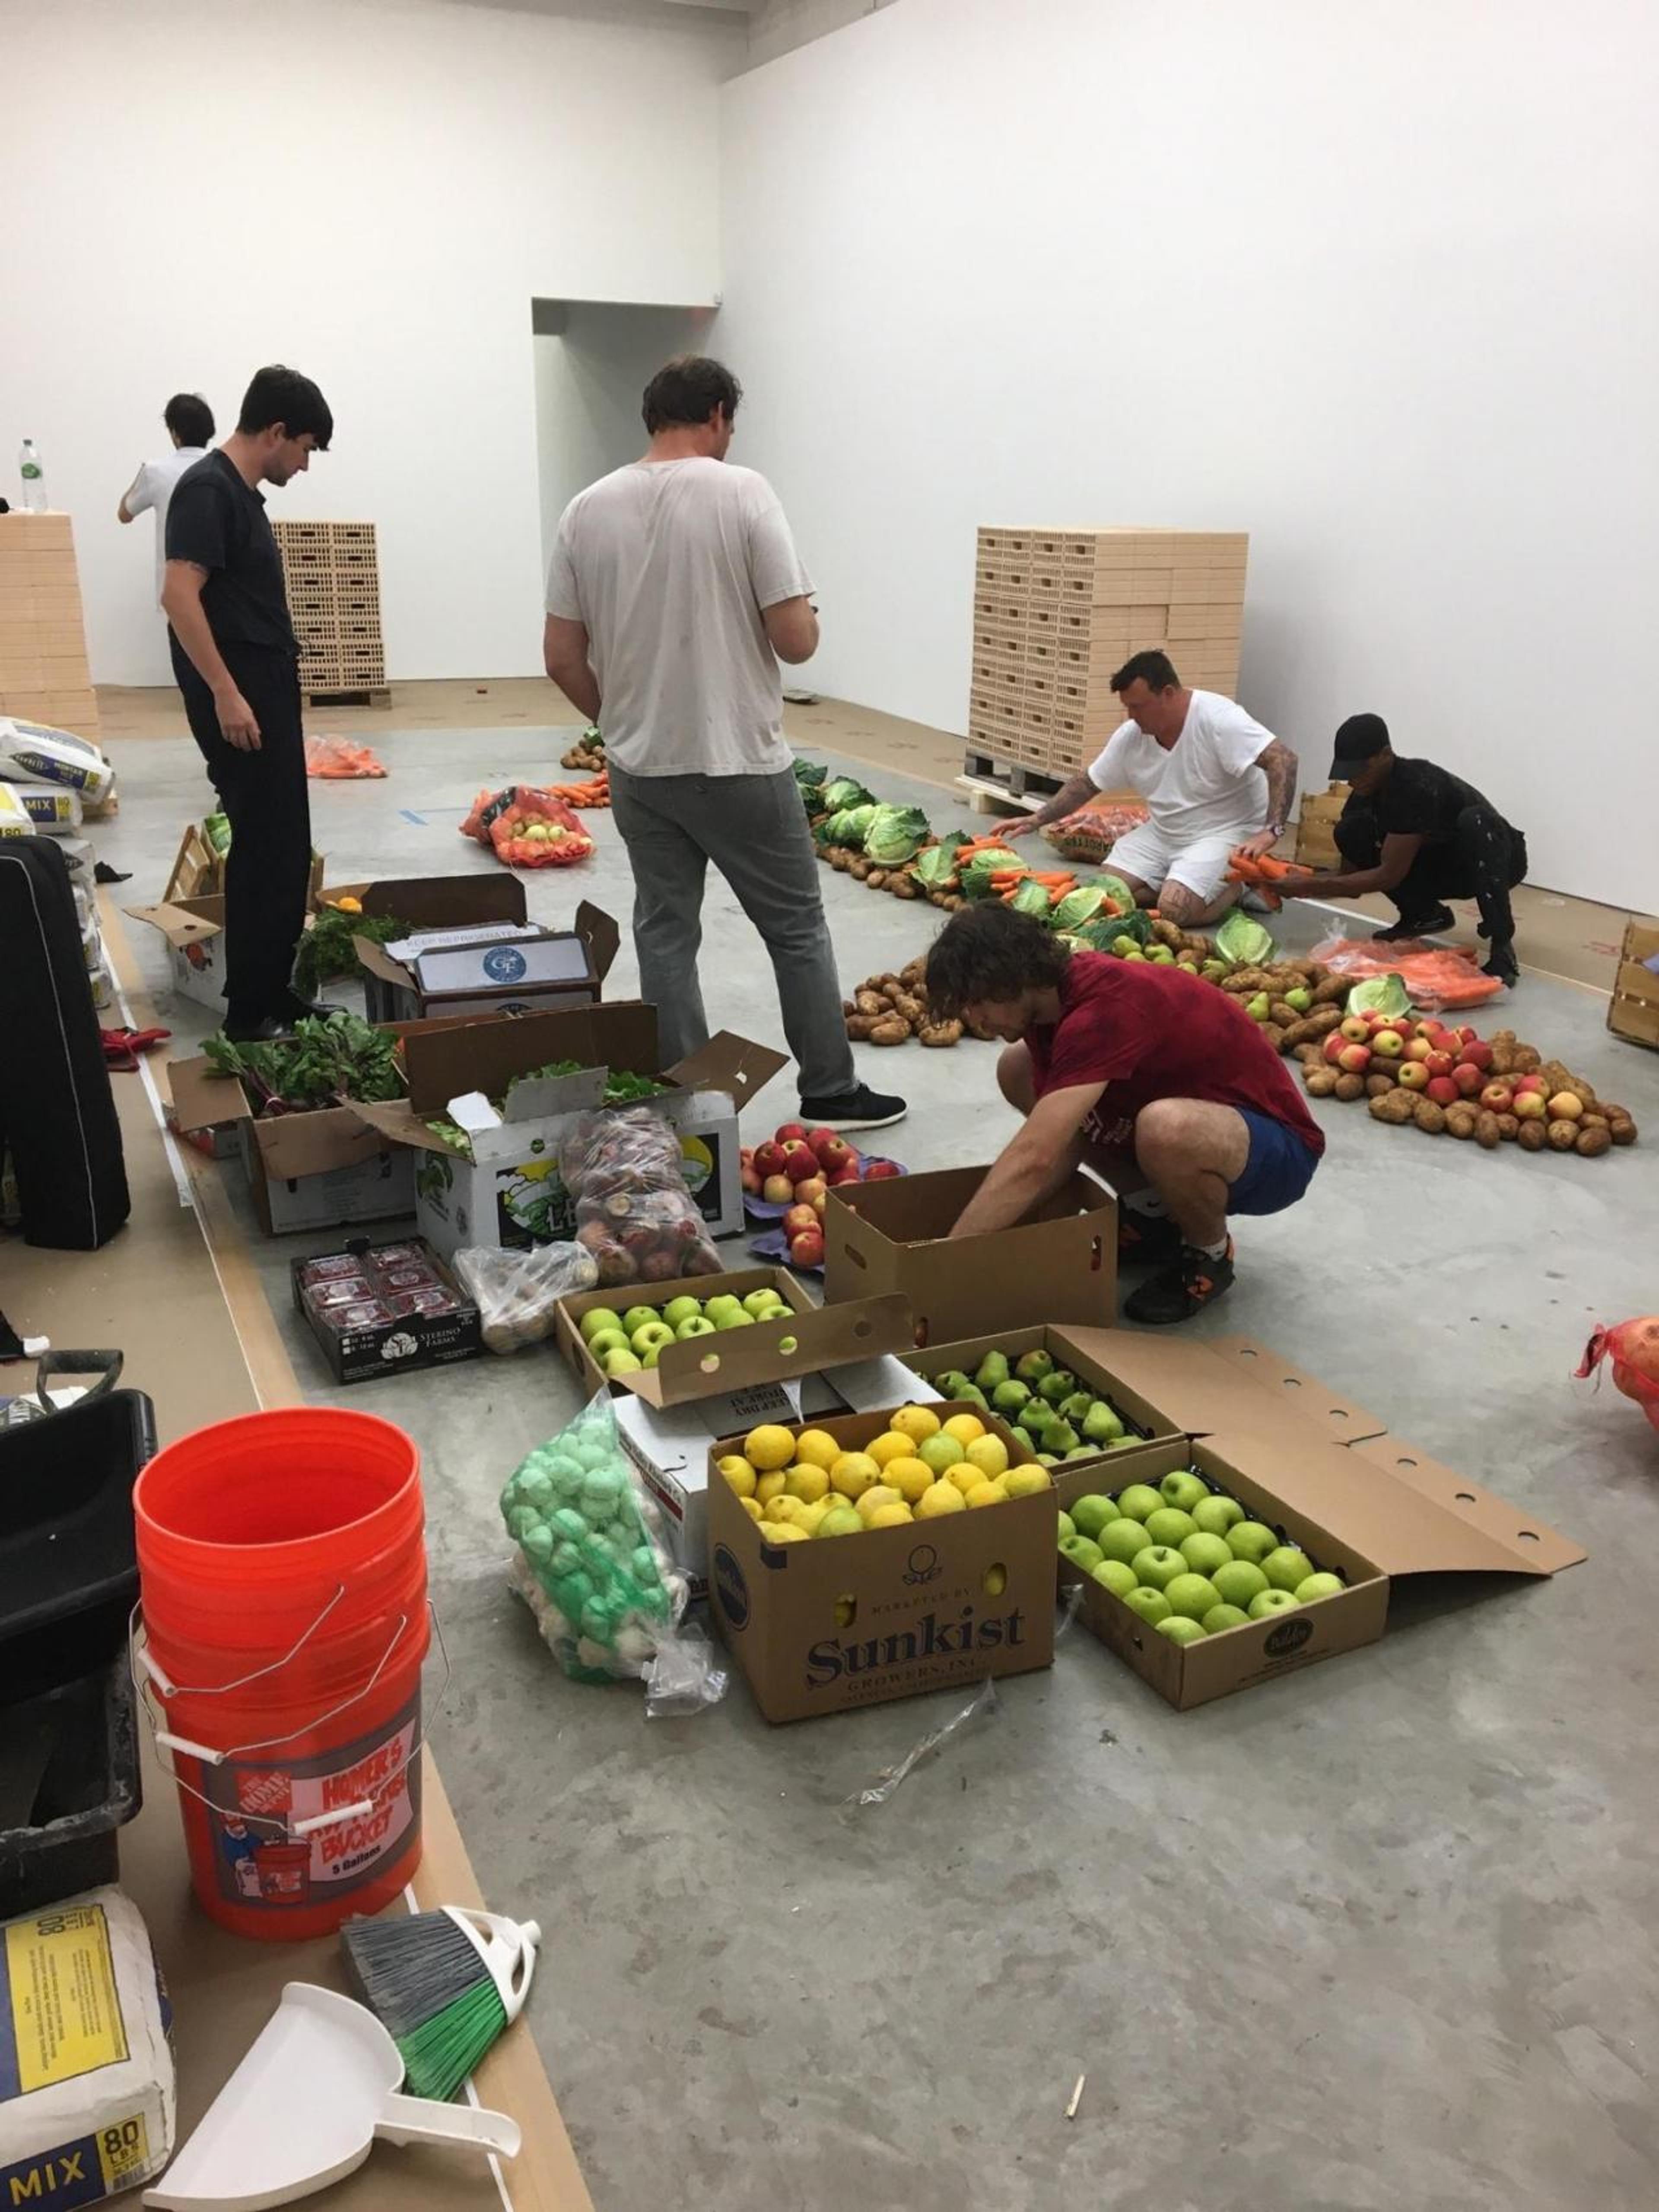 Handling produce for an Urs Fischer installation.